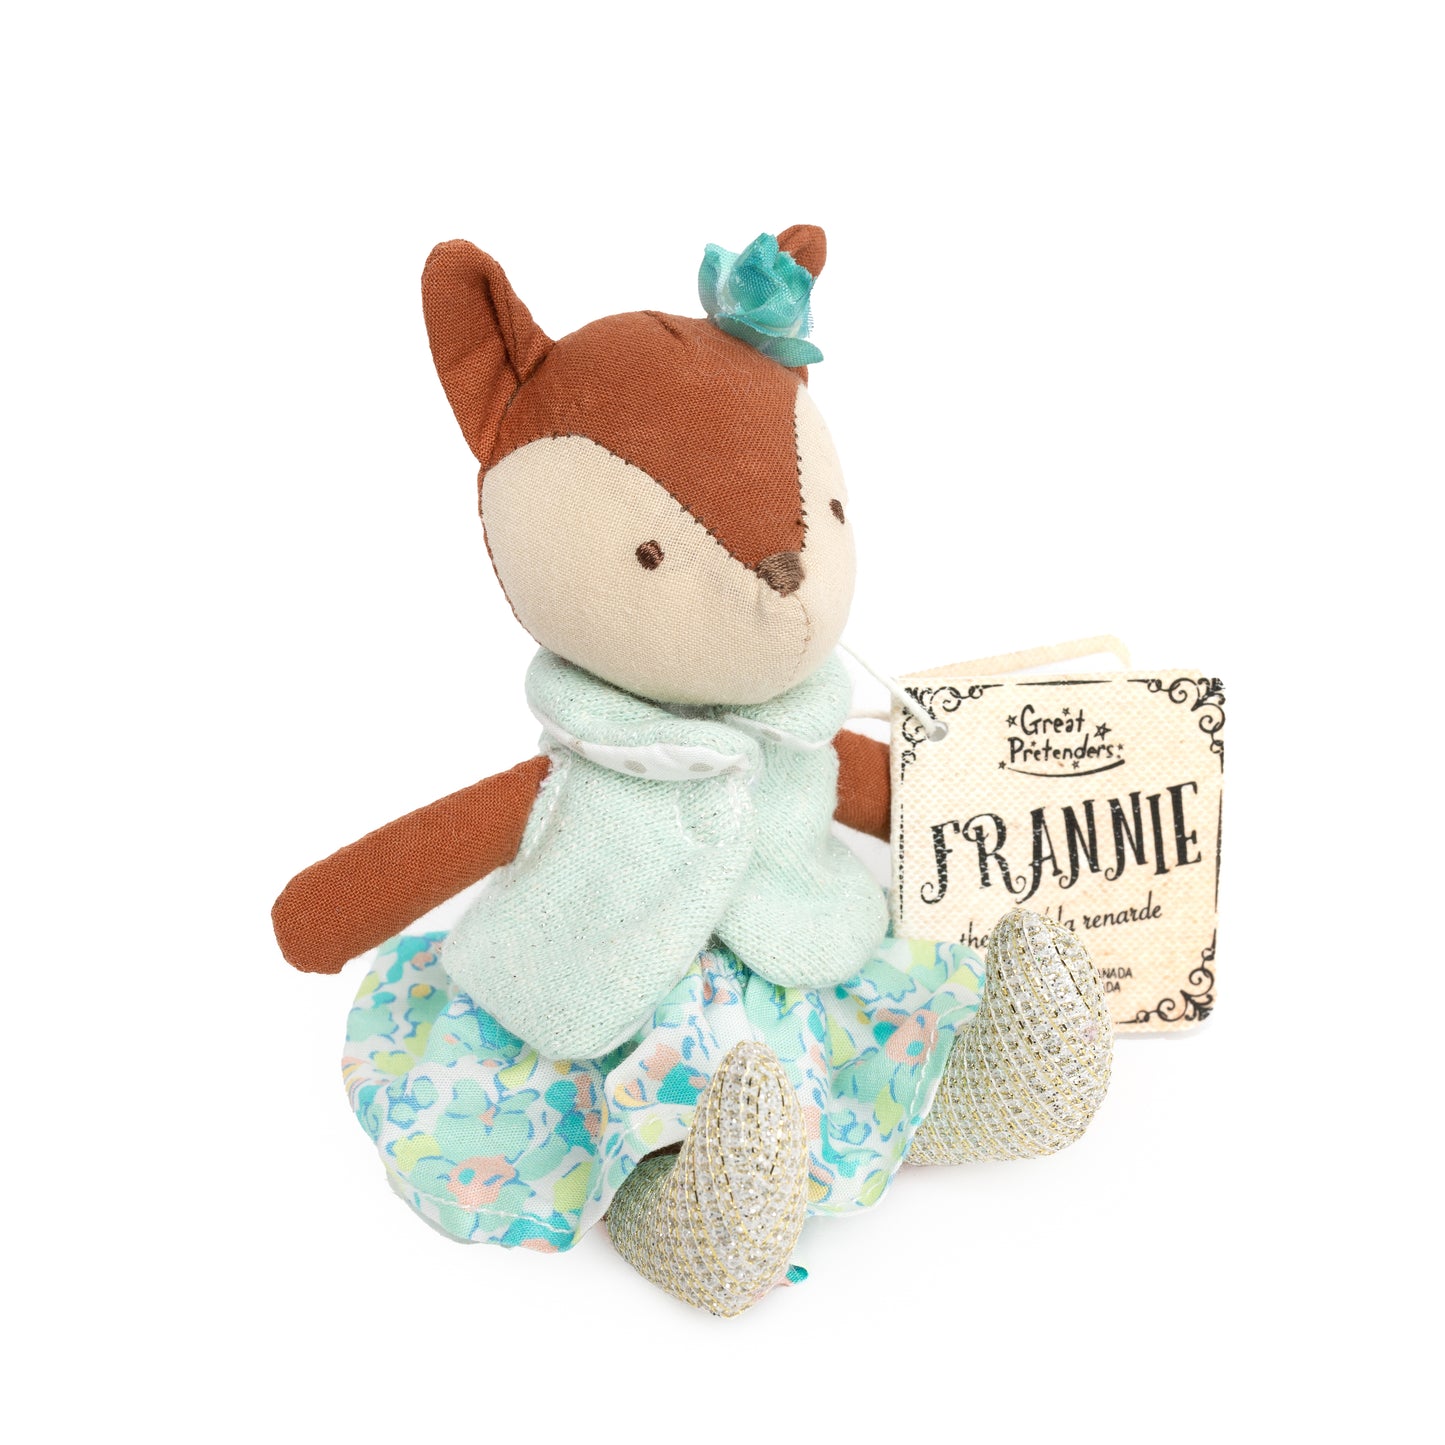 Frannie the fox mini doll